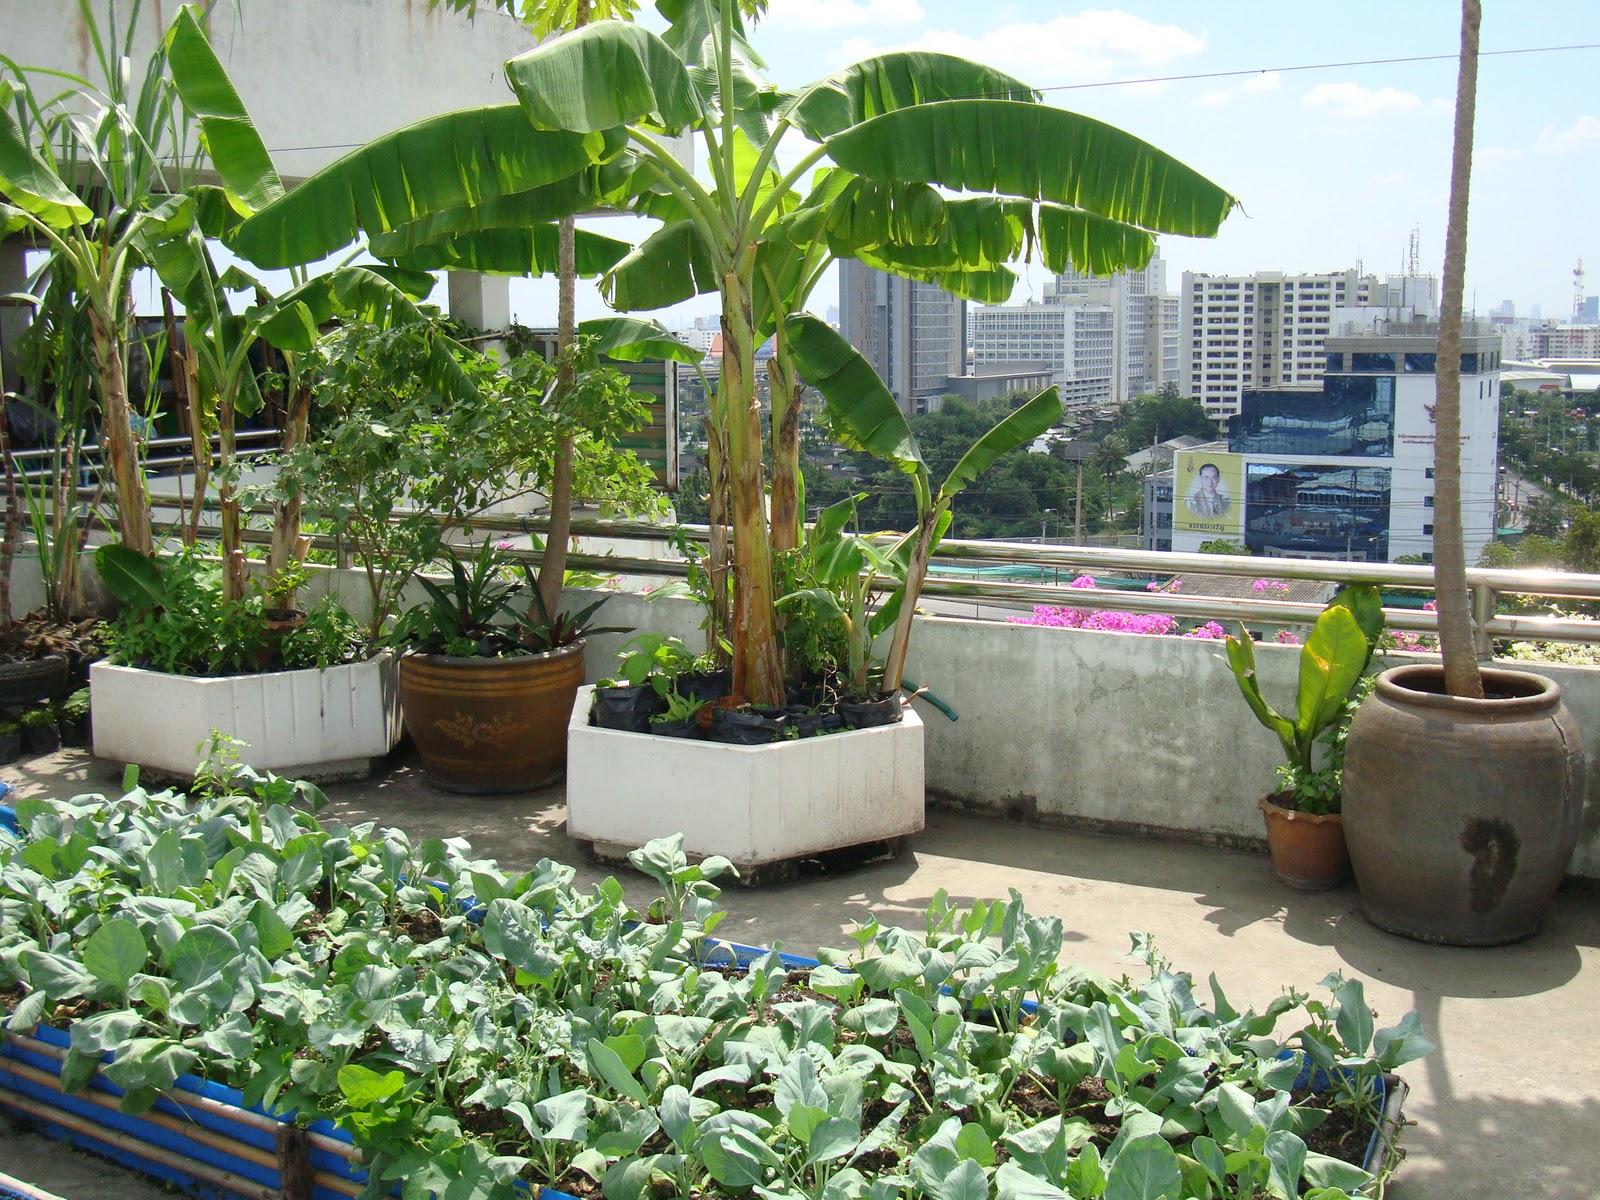 Vườn trên sân thượng: Thưởng thức không gian xanh độc đáo và tận hưởng khoảng không tuyệt vời trên sân thượng với một vườn cây xanh tươi và đầy sức sống. Hãy trốn khỏi cuộc sống ồn ào và thưởng thức tiếng ru của thiên nhiên trên sân thượng của bạn.